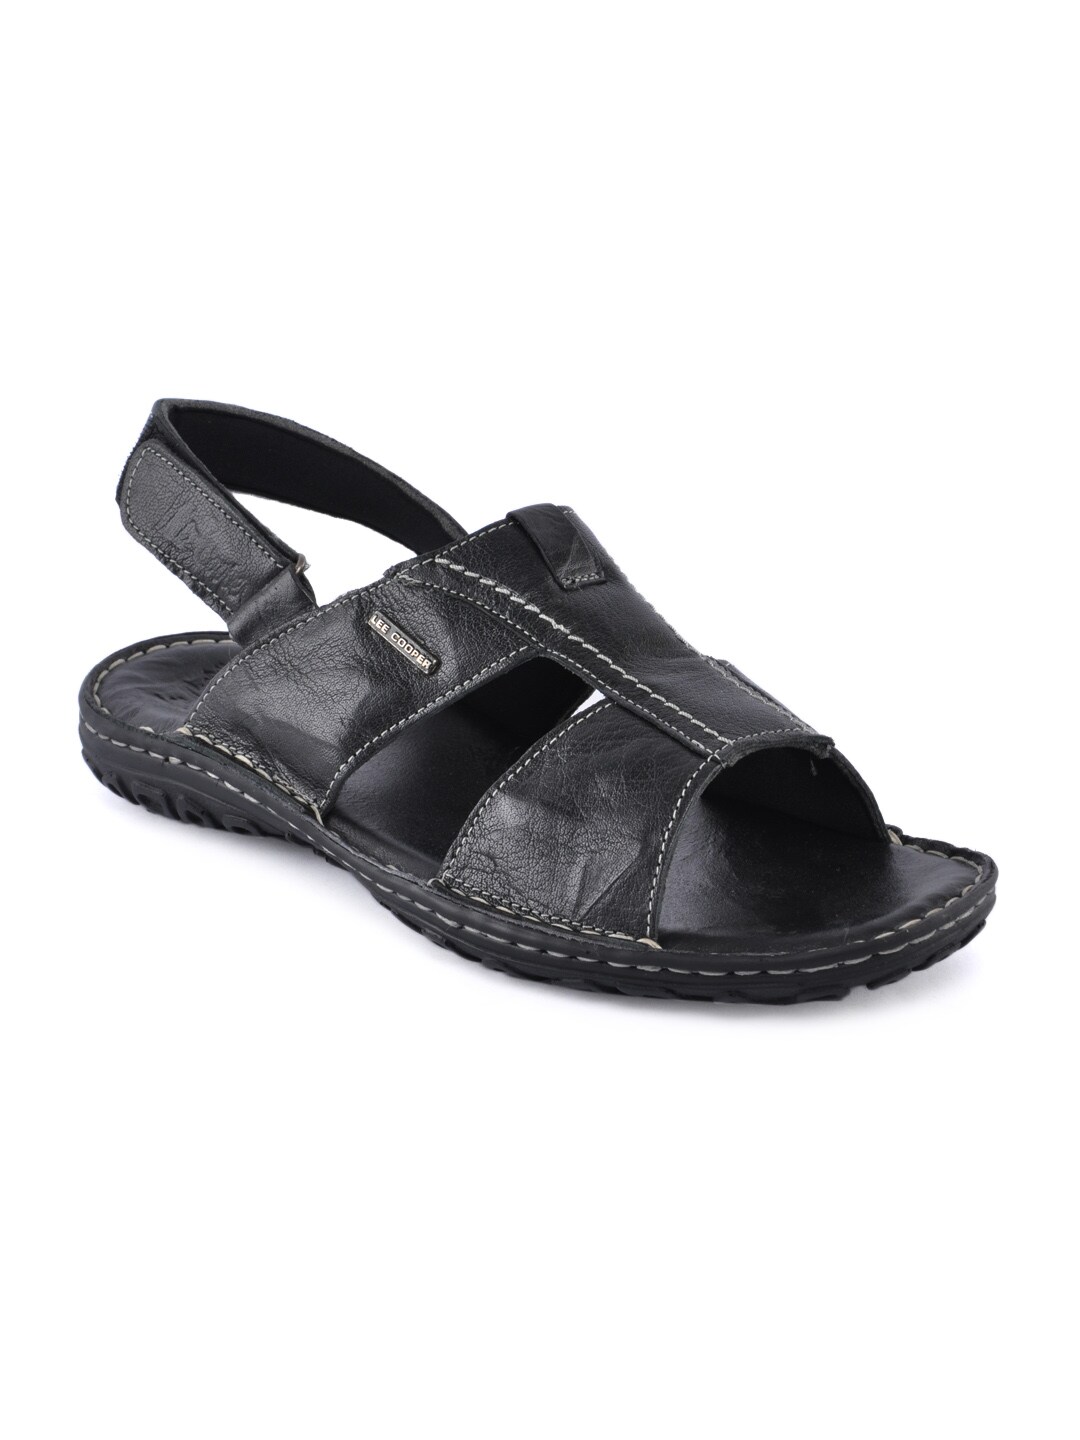 Lee Cooper Men Basic Black Sandals